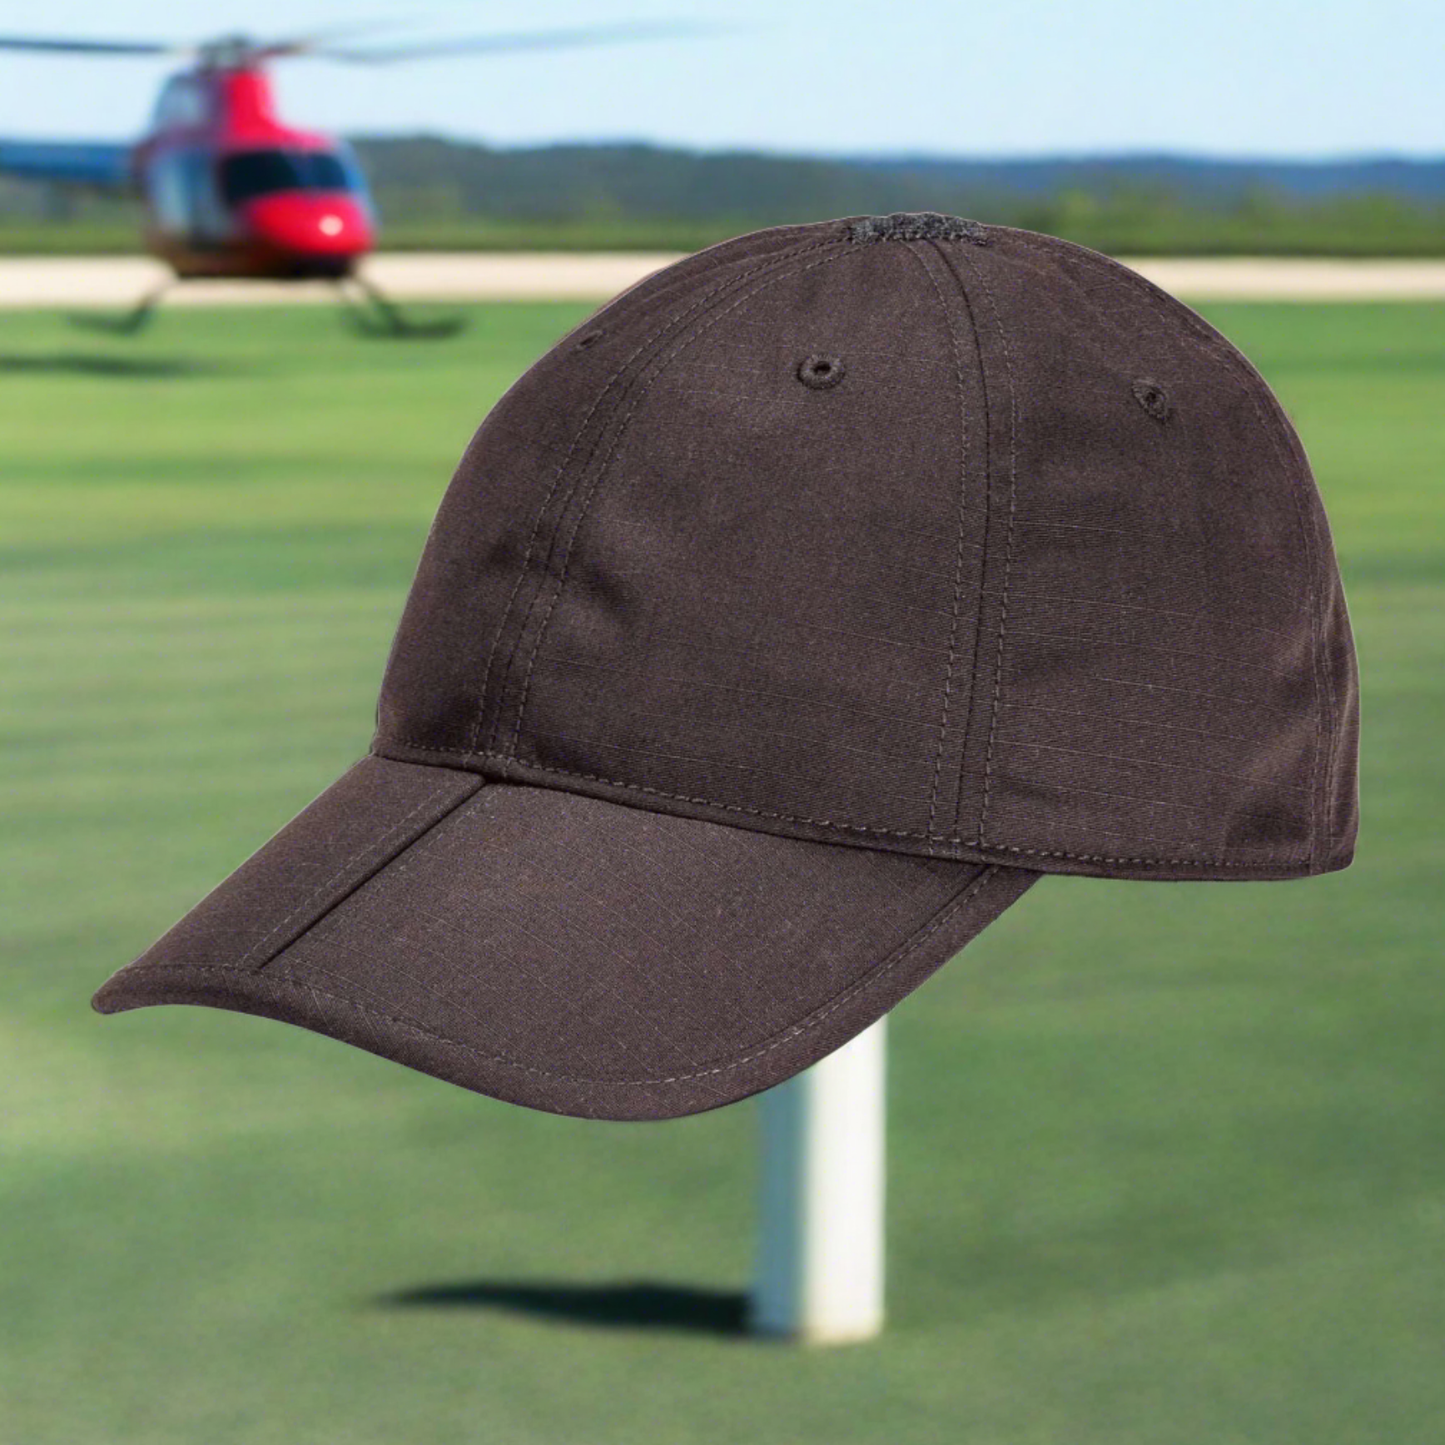 Ball Cap - 5.11 Tactical Foldable Uniform Hat